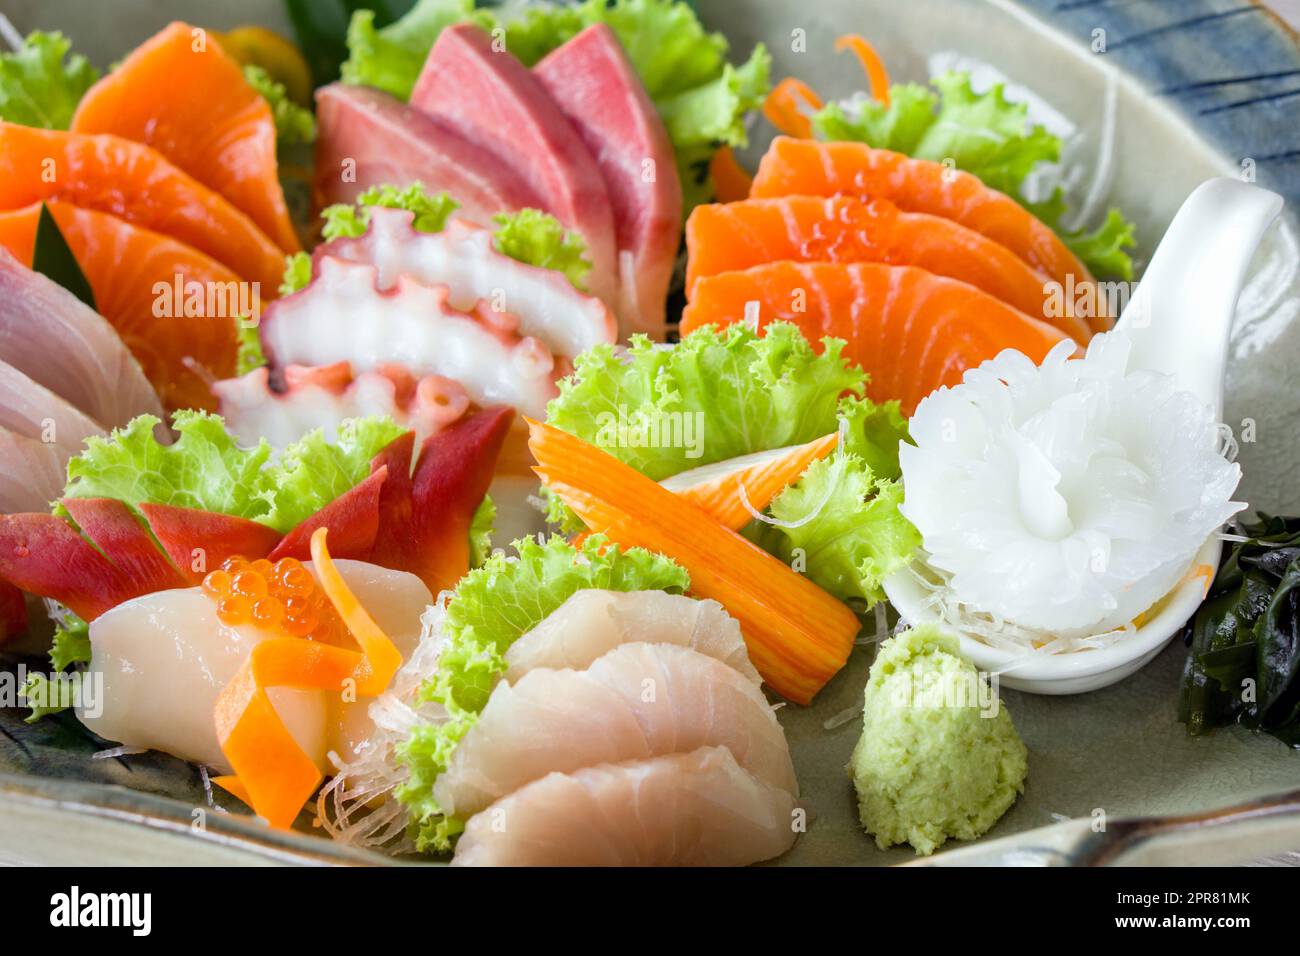 Sashimi mori, ensemble de sashimi mélangé servi dans une assiette en céramique décorée de laitue verte. Buffet de cuisine japonaise. Choix du chef : saumon, hamachi, Ika, Tako, Hotate et hokkigai Banque D'Images